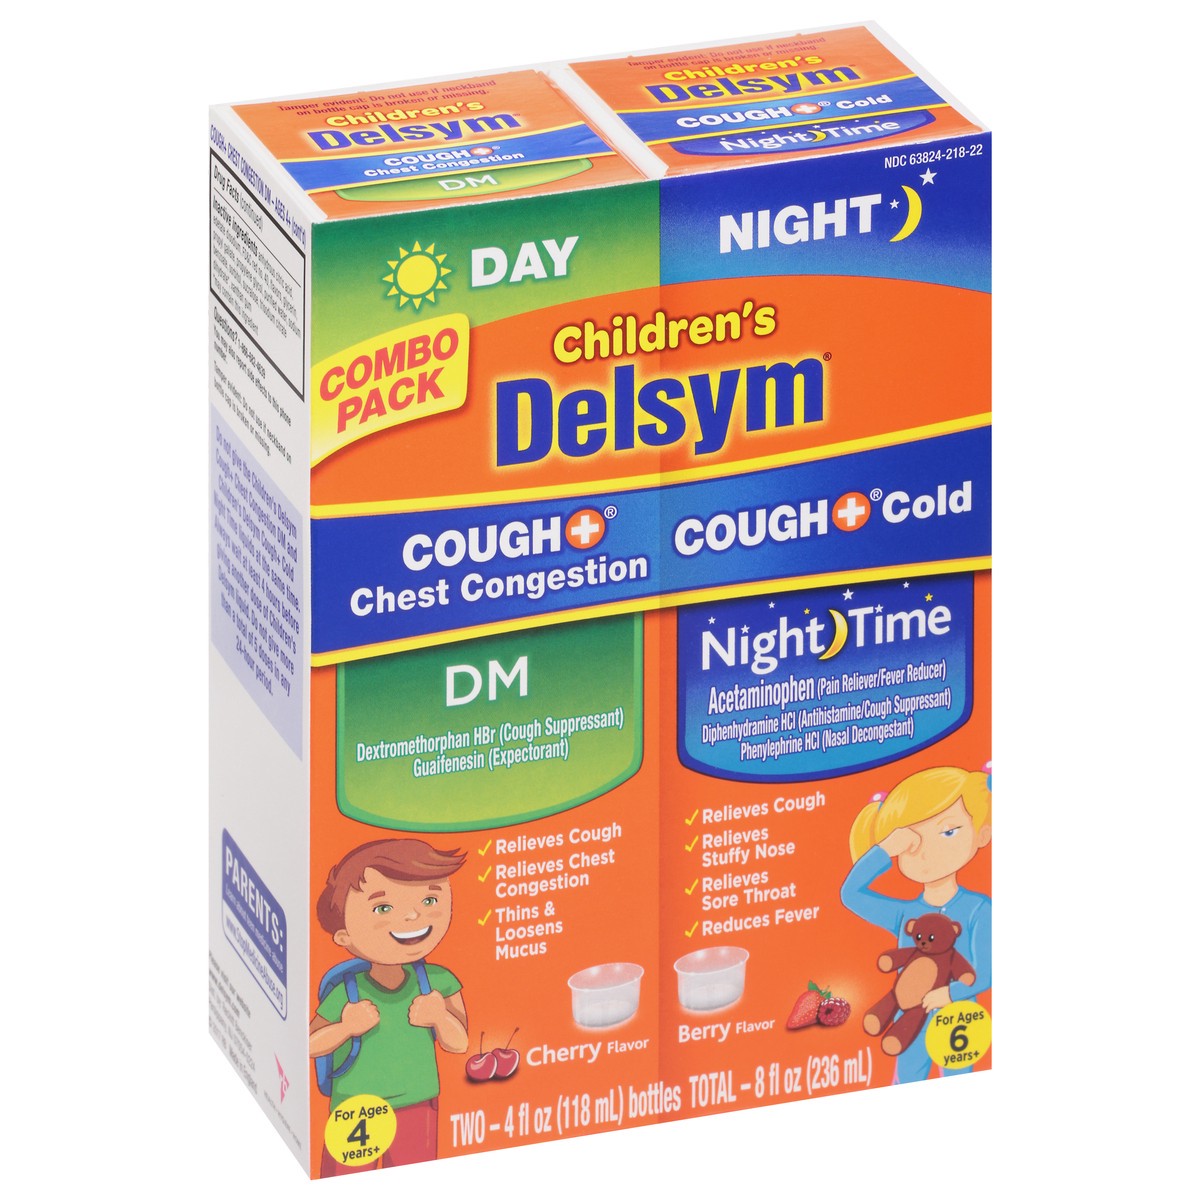 slide 7 of 11, DELSYM Children's Liquid - Cough Plus Day Nightofbottles, 2 ct